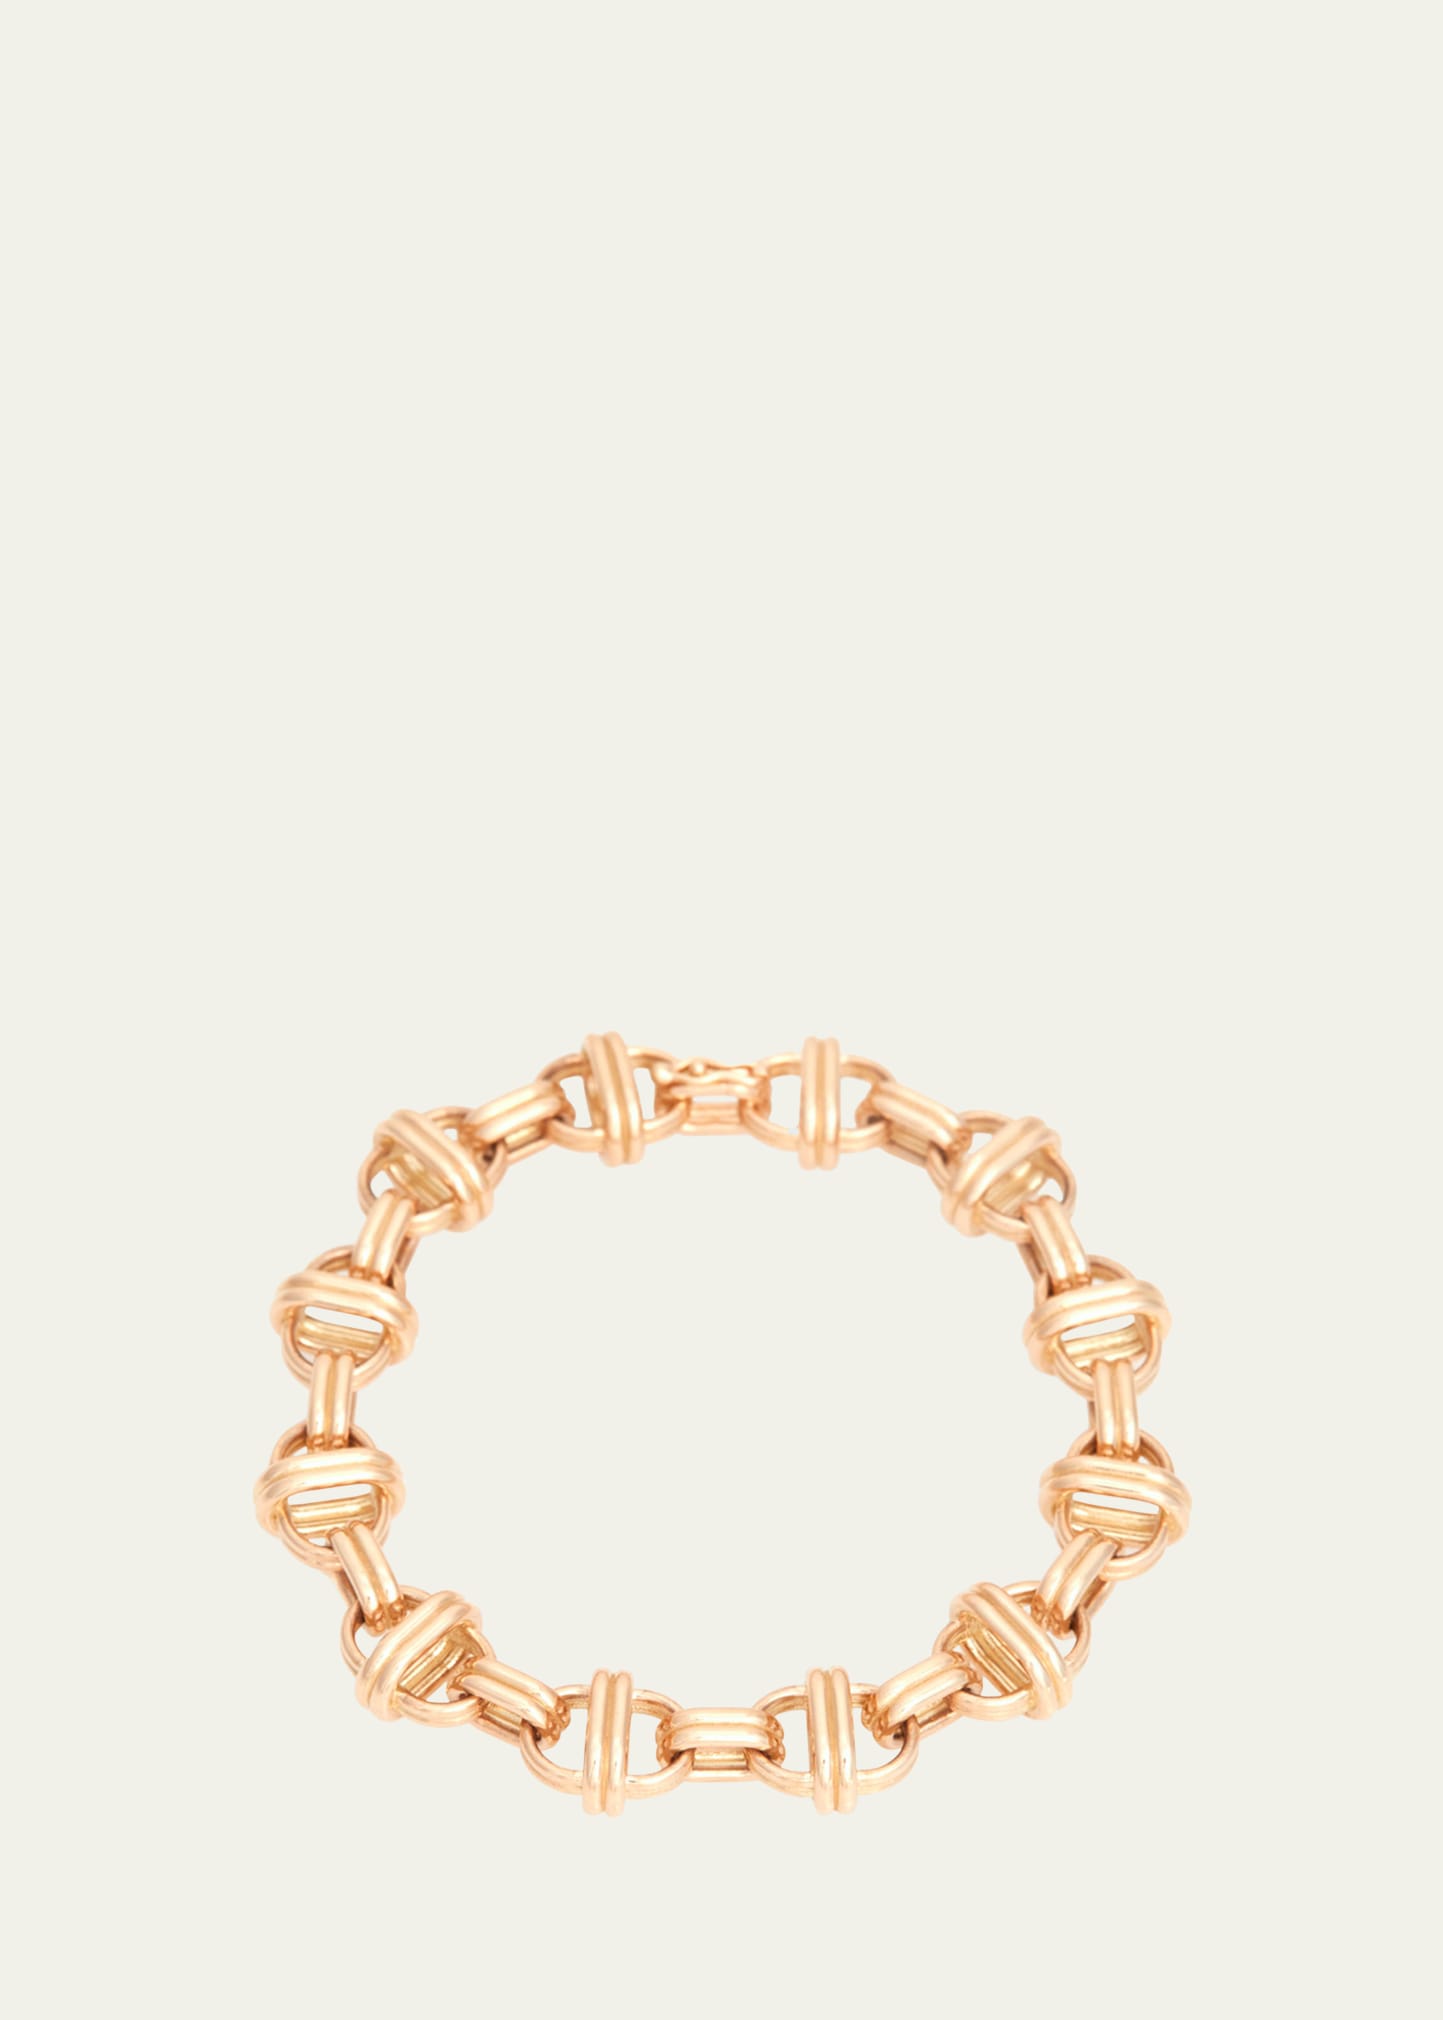 18K Gold Oval Chain Large Link Bracelet, 7.75"